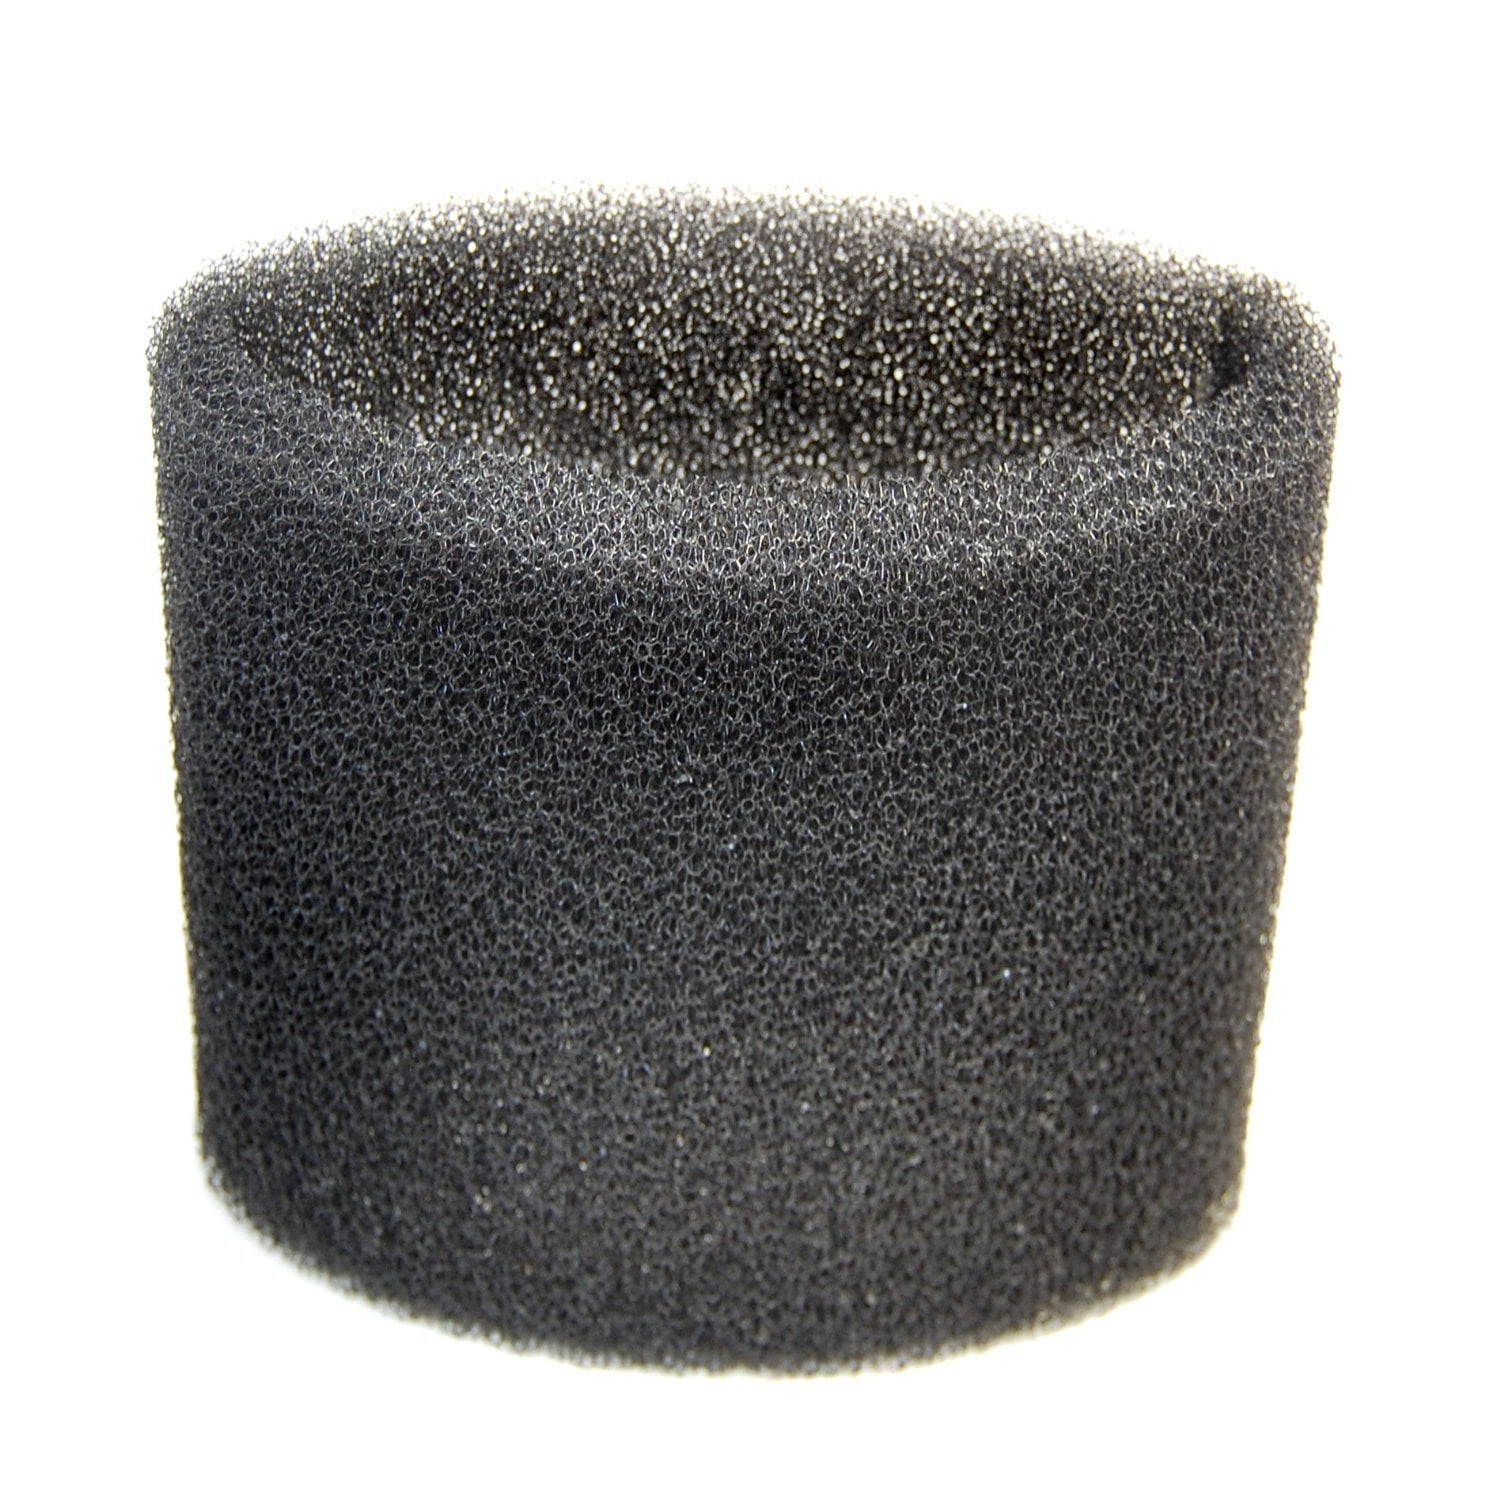 HQRP Foam Filter Sleeve for Shop-Vac 2010A 2015A 2E200 3150 3200 3225 3332 3334